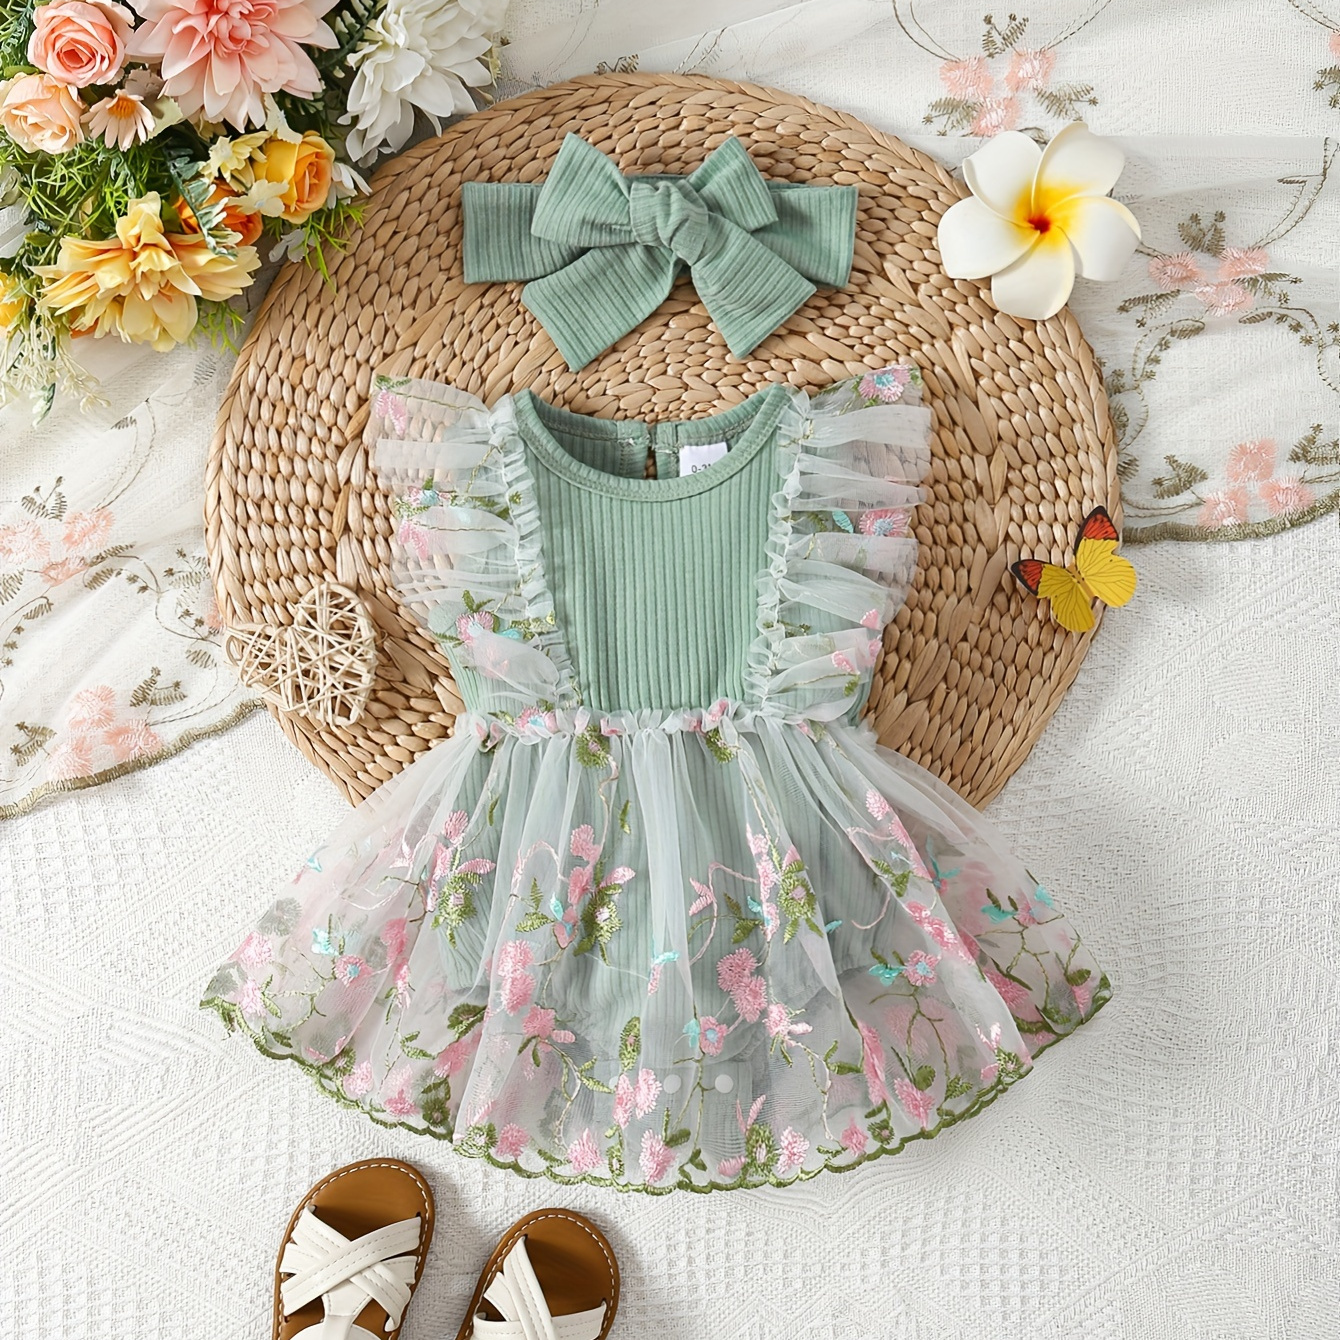 

Baby's Elegant Flower Embroidered Mesh Splicing Bodysuit & Hairband, Lovely Sleeveless Romper Dress, Toddler & Infant Girl's Onesie For Summer, As Gift